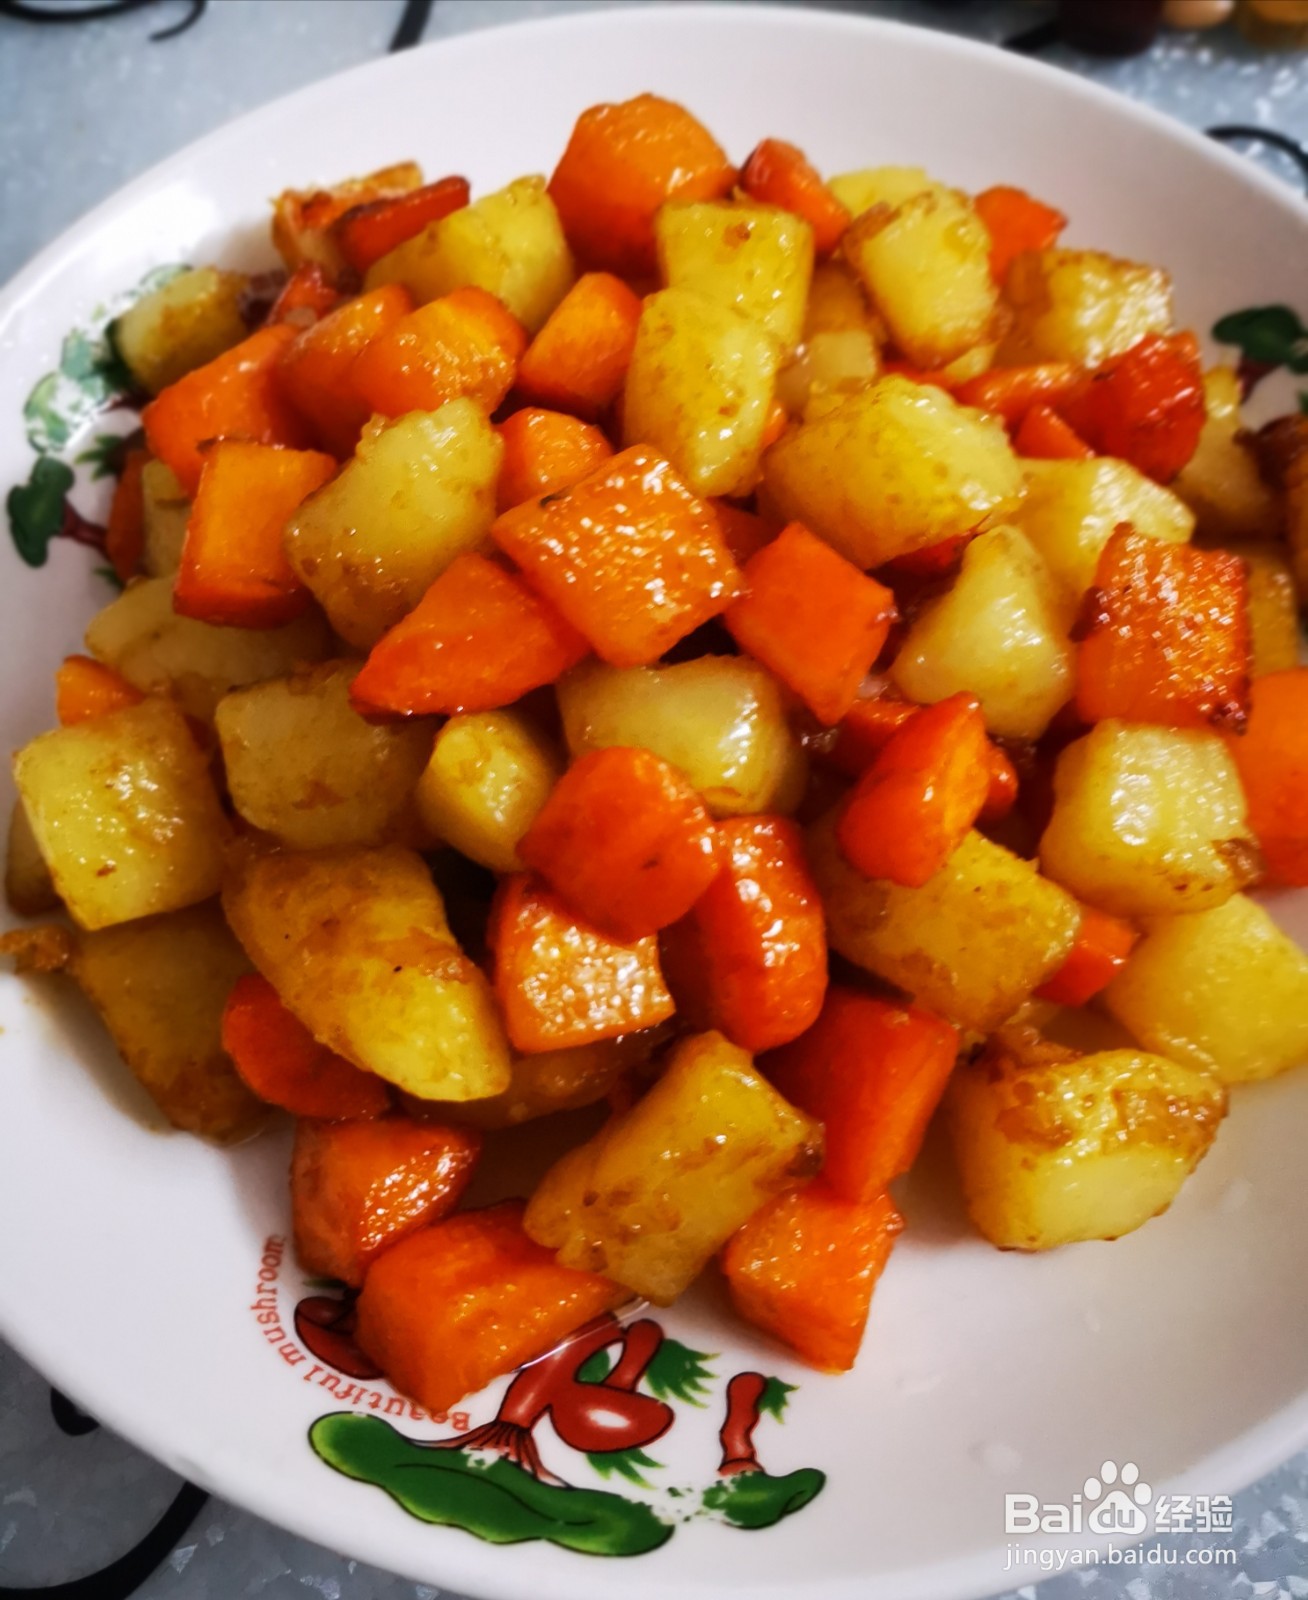 土豆,胡萝卜块混炒